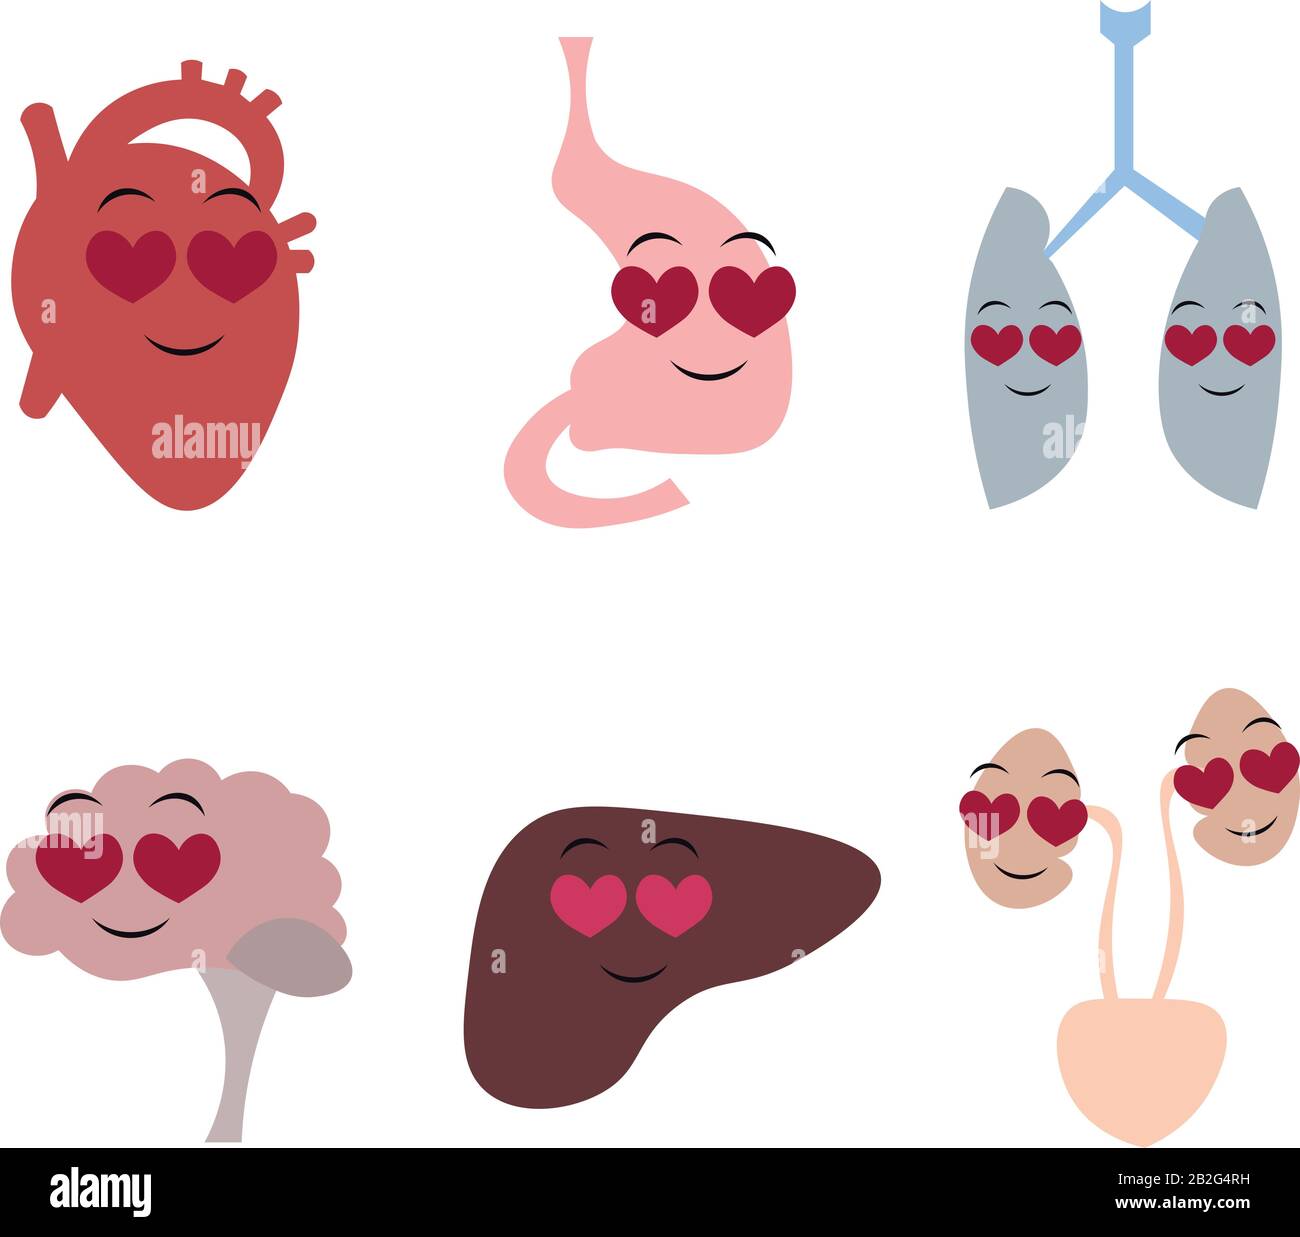 Órganos del cuerpo humano en el estilo de dibujos animados. Corazón, cerebro, sistema respiratorio, aparato digestivo, sistema excretor. Amor, salud, familia. Diseño f Ilustración del Vector